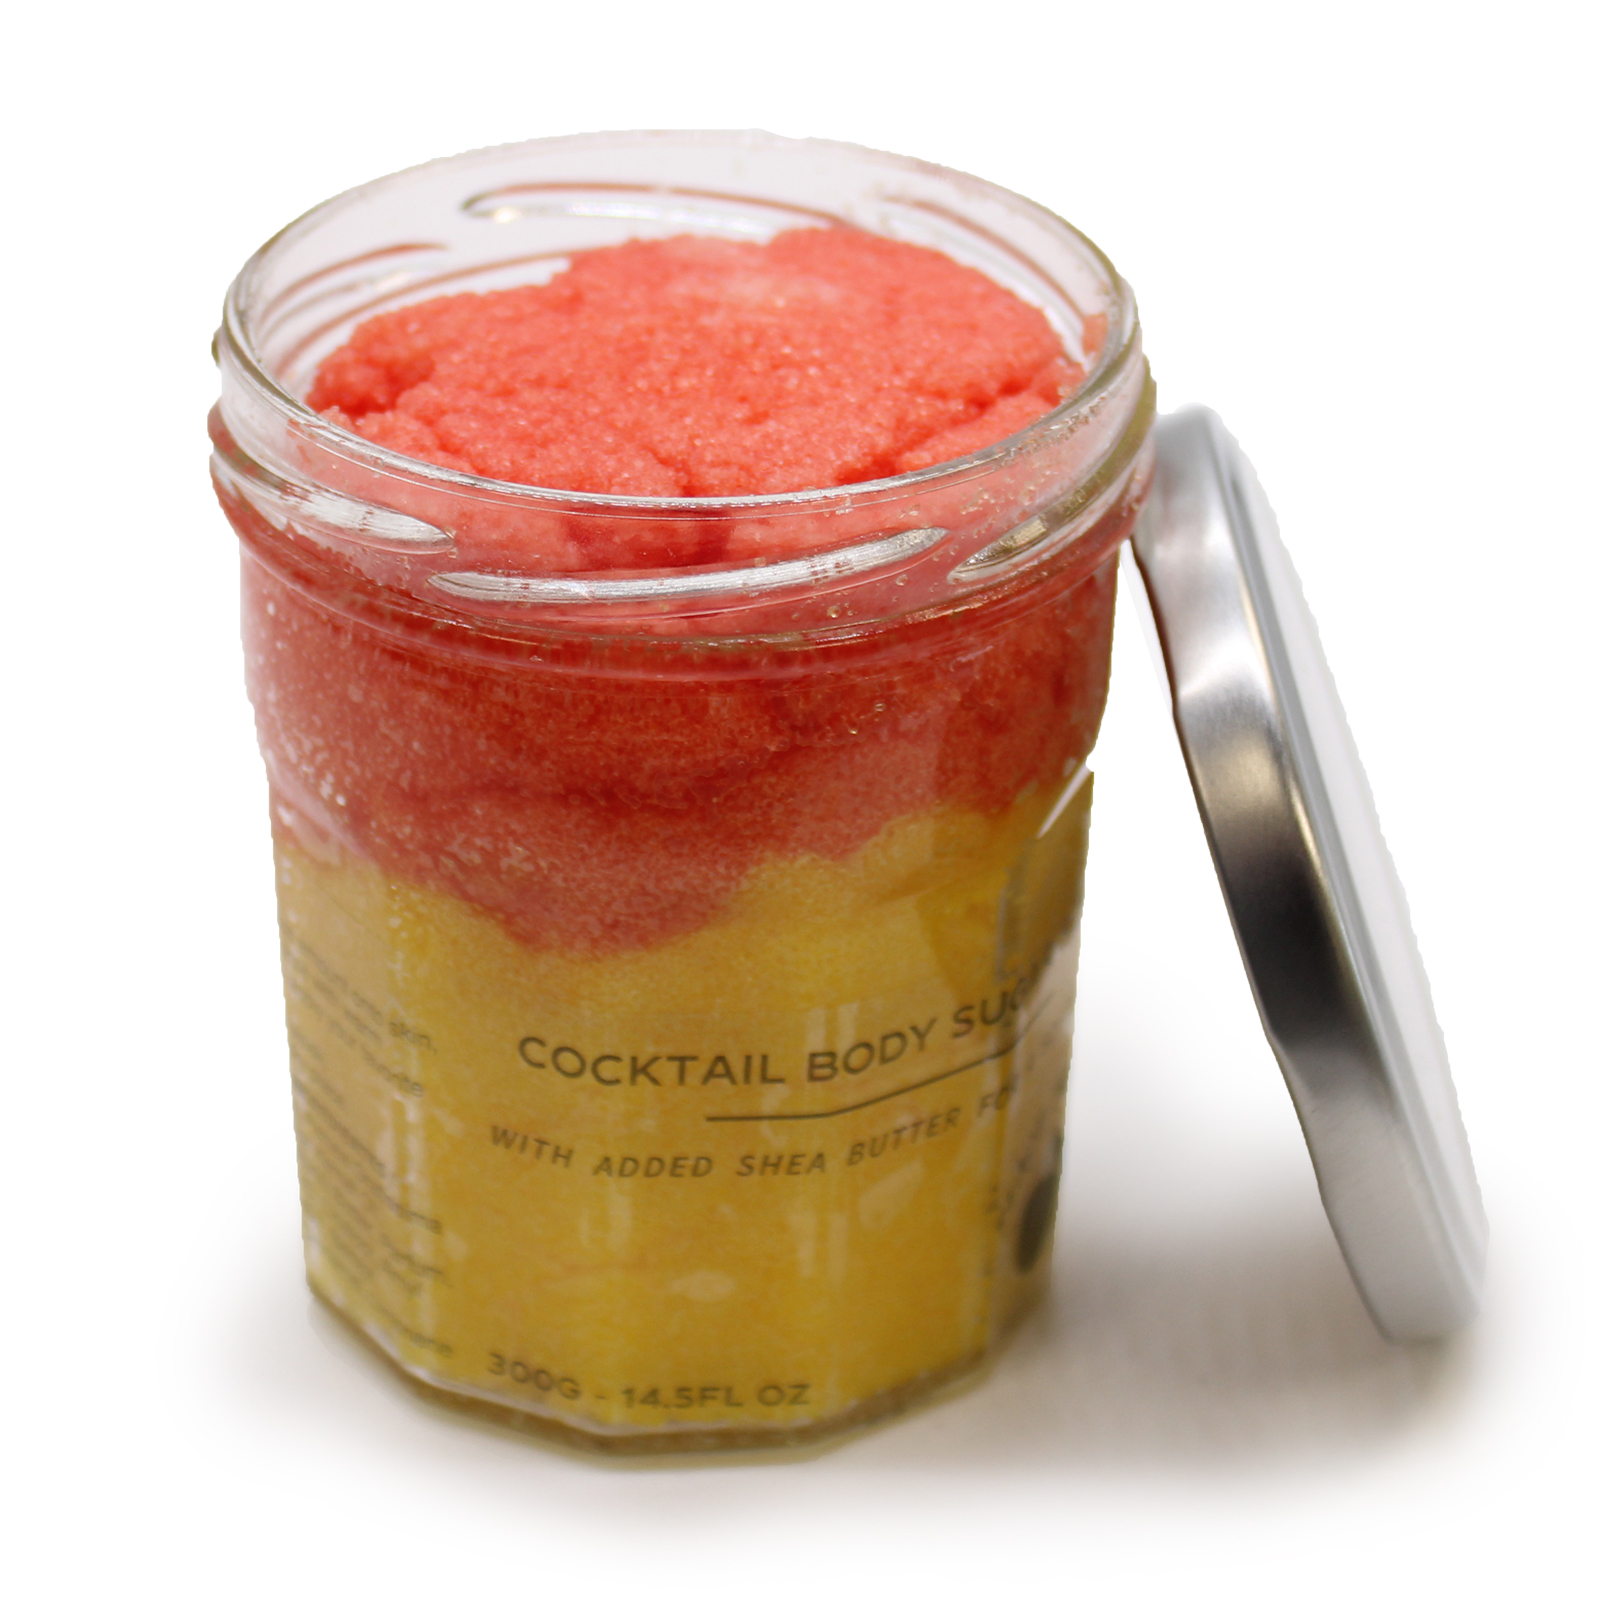 Fragranced Sugar Body Scrub - Peach Sangria 300g - Click Image to Close